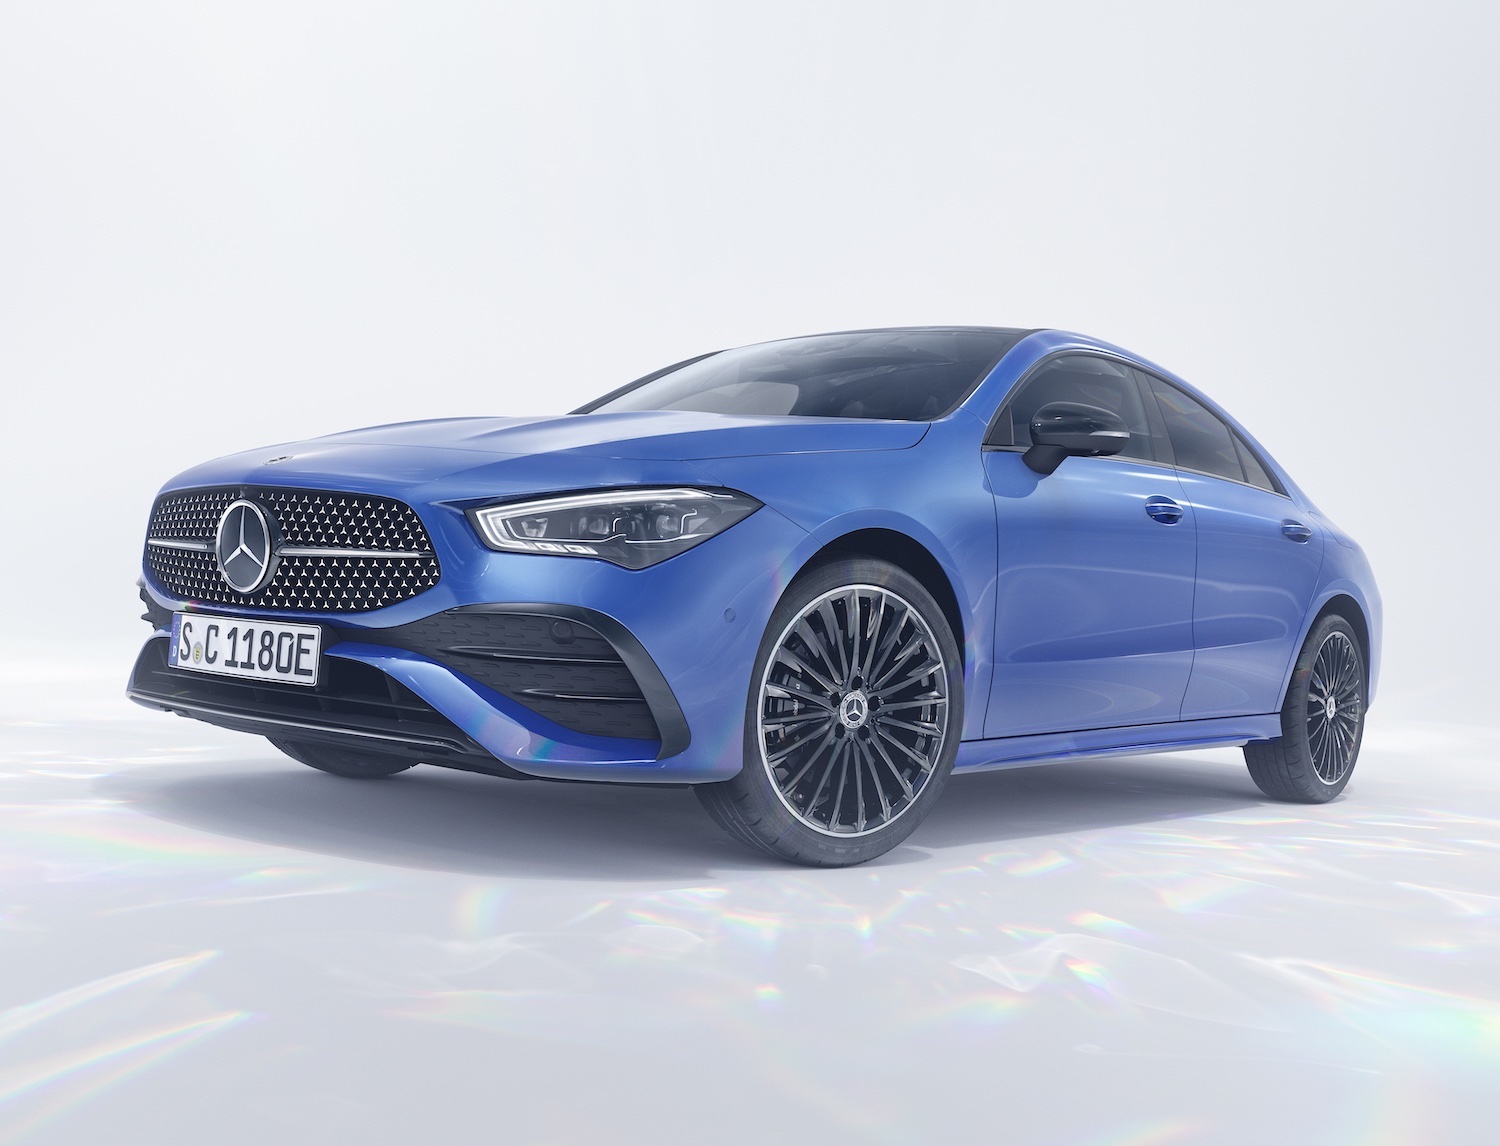 Mercedes : un léger lifting pour la CLA hybride rechargeable